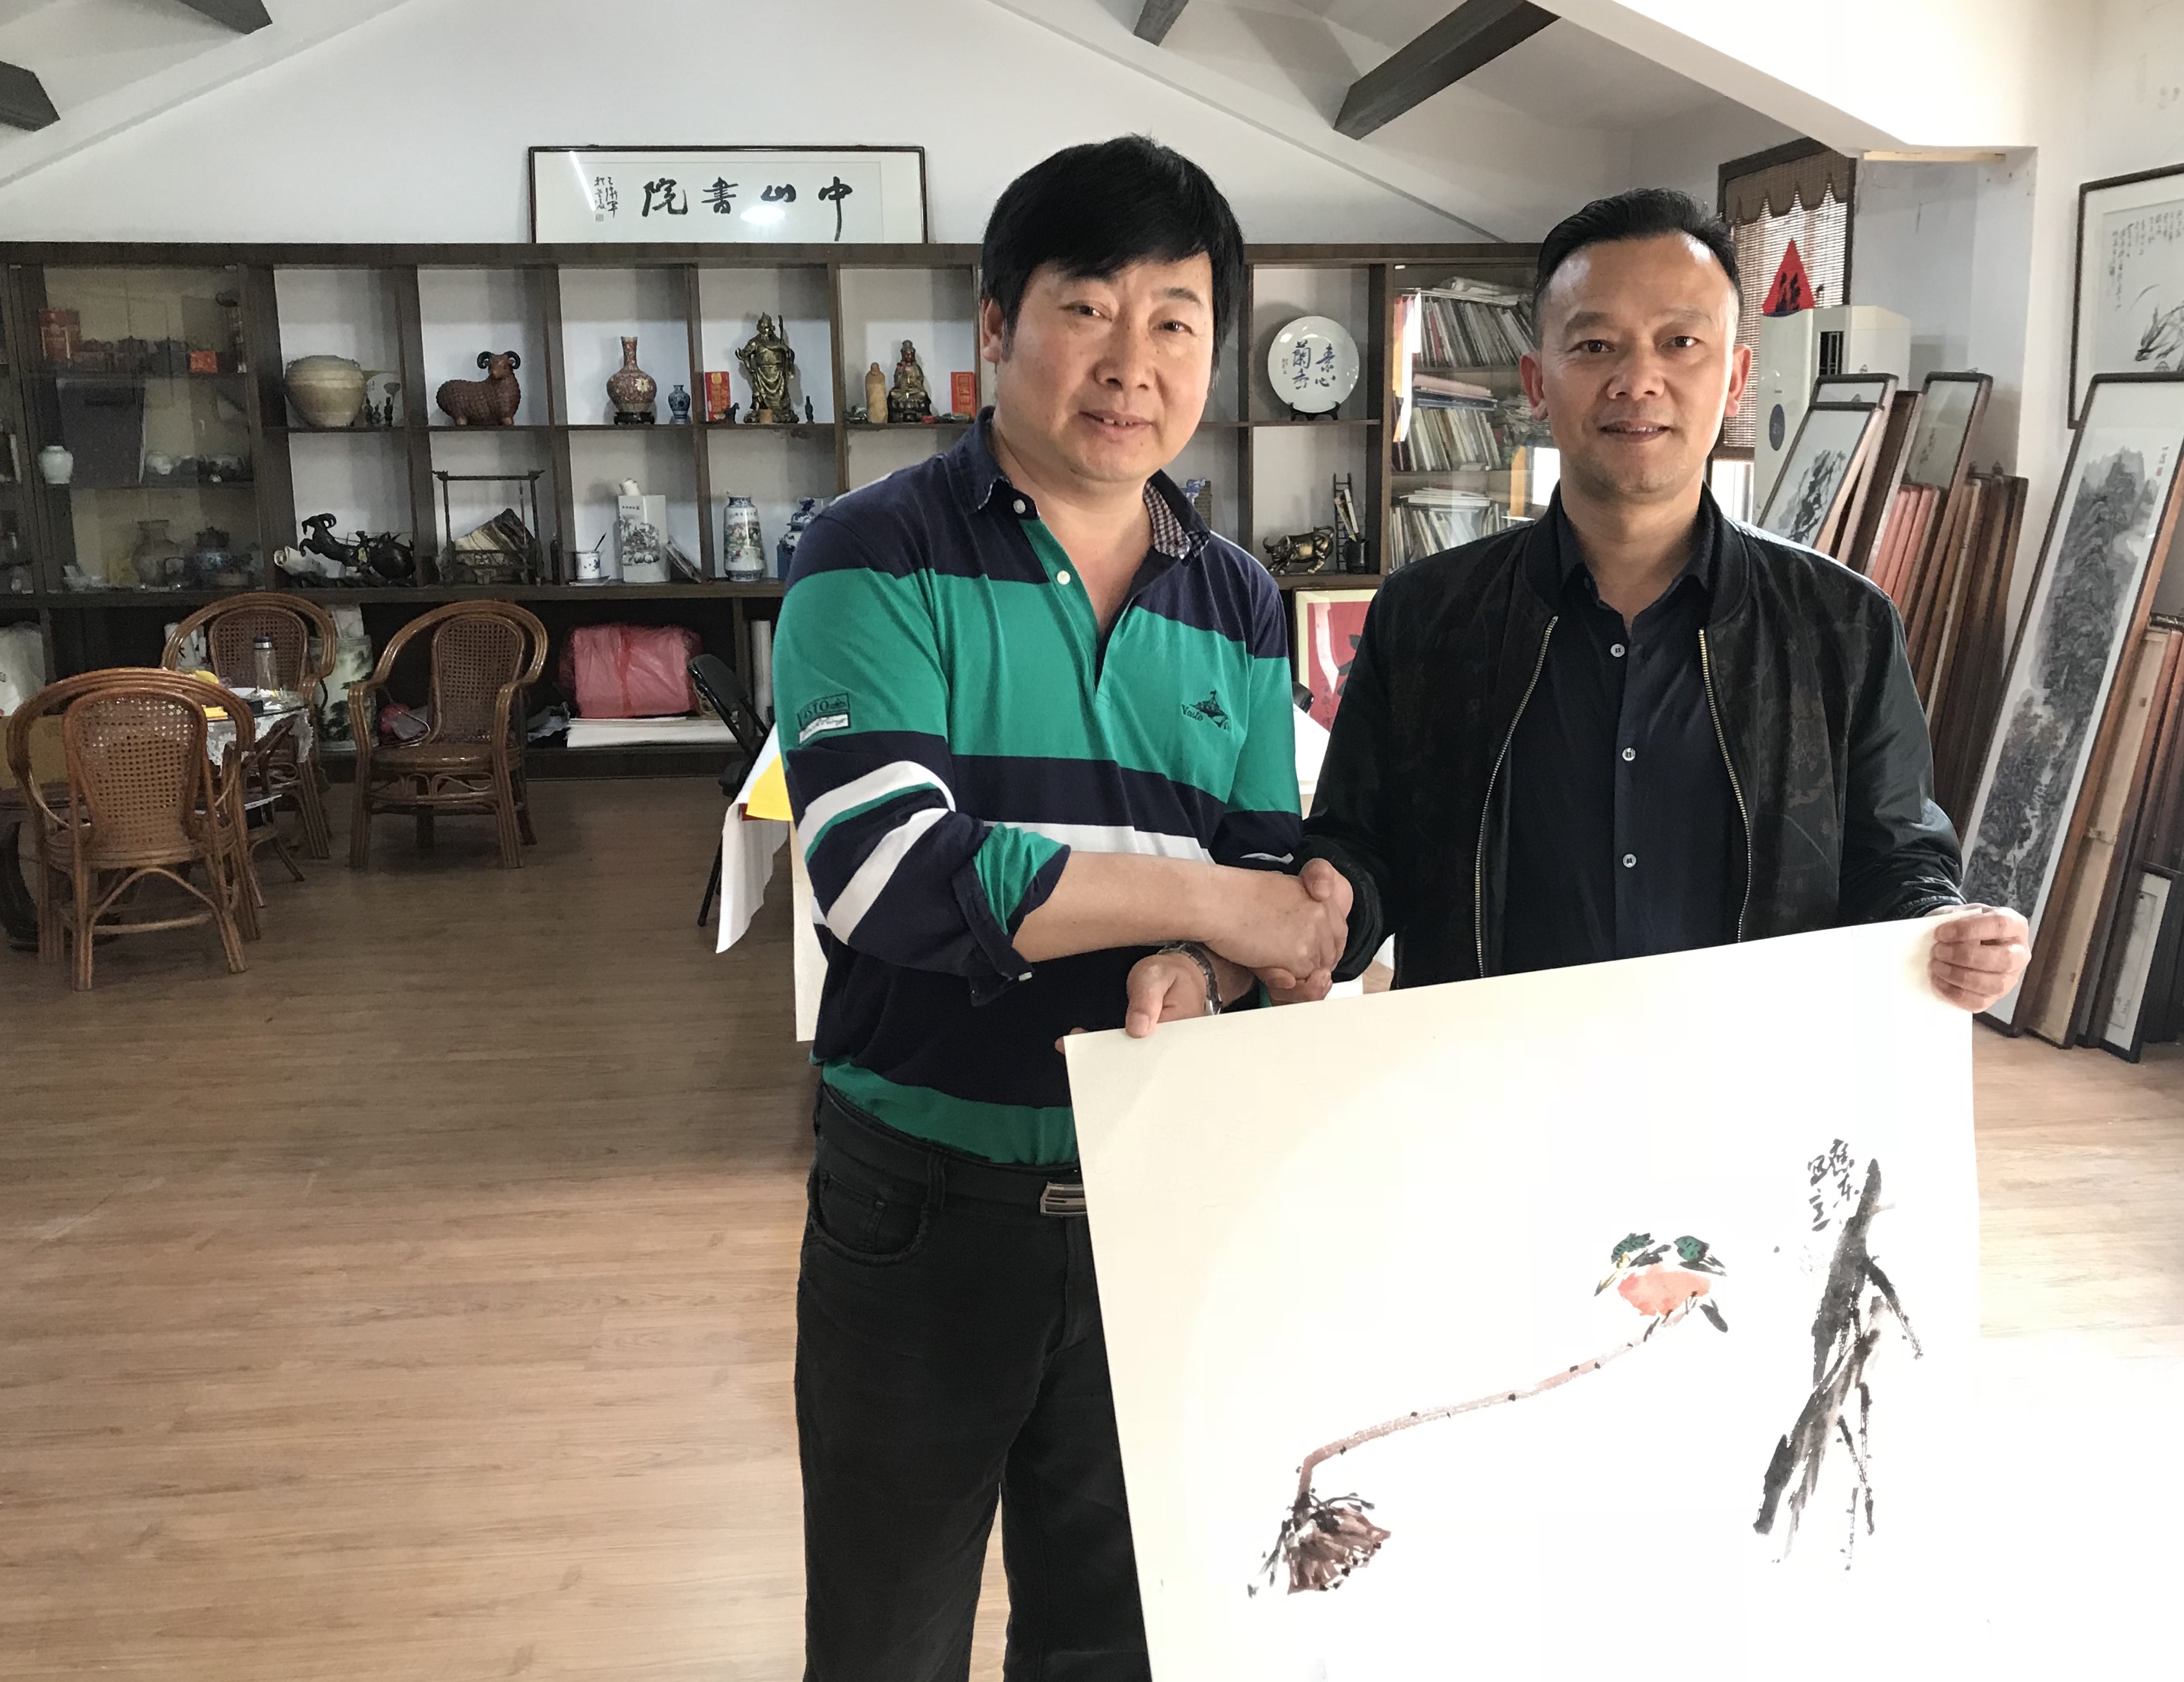 2019年4月6日严家军院长收藏画家李应东先生的作品，并相互握手致意